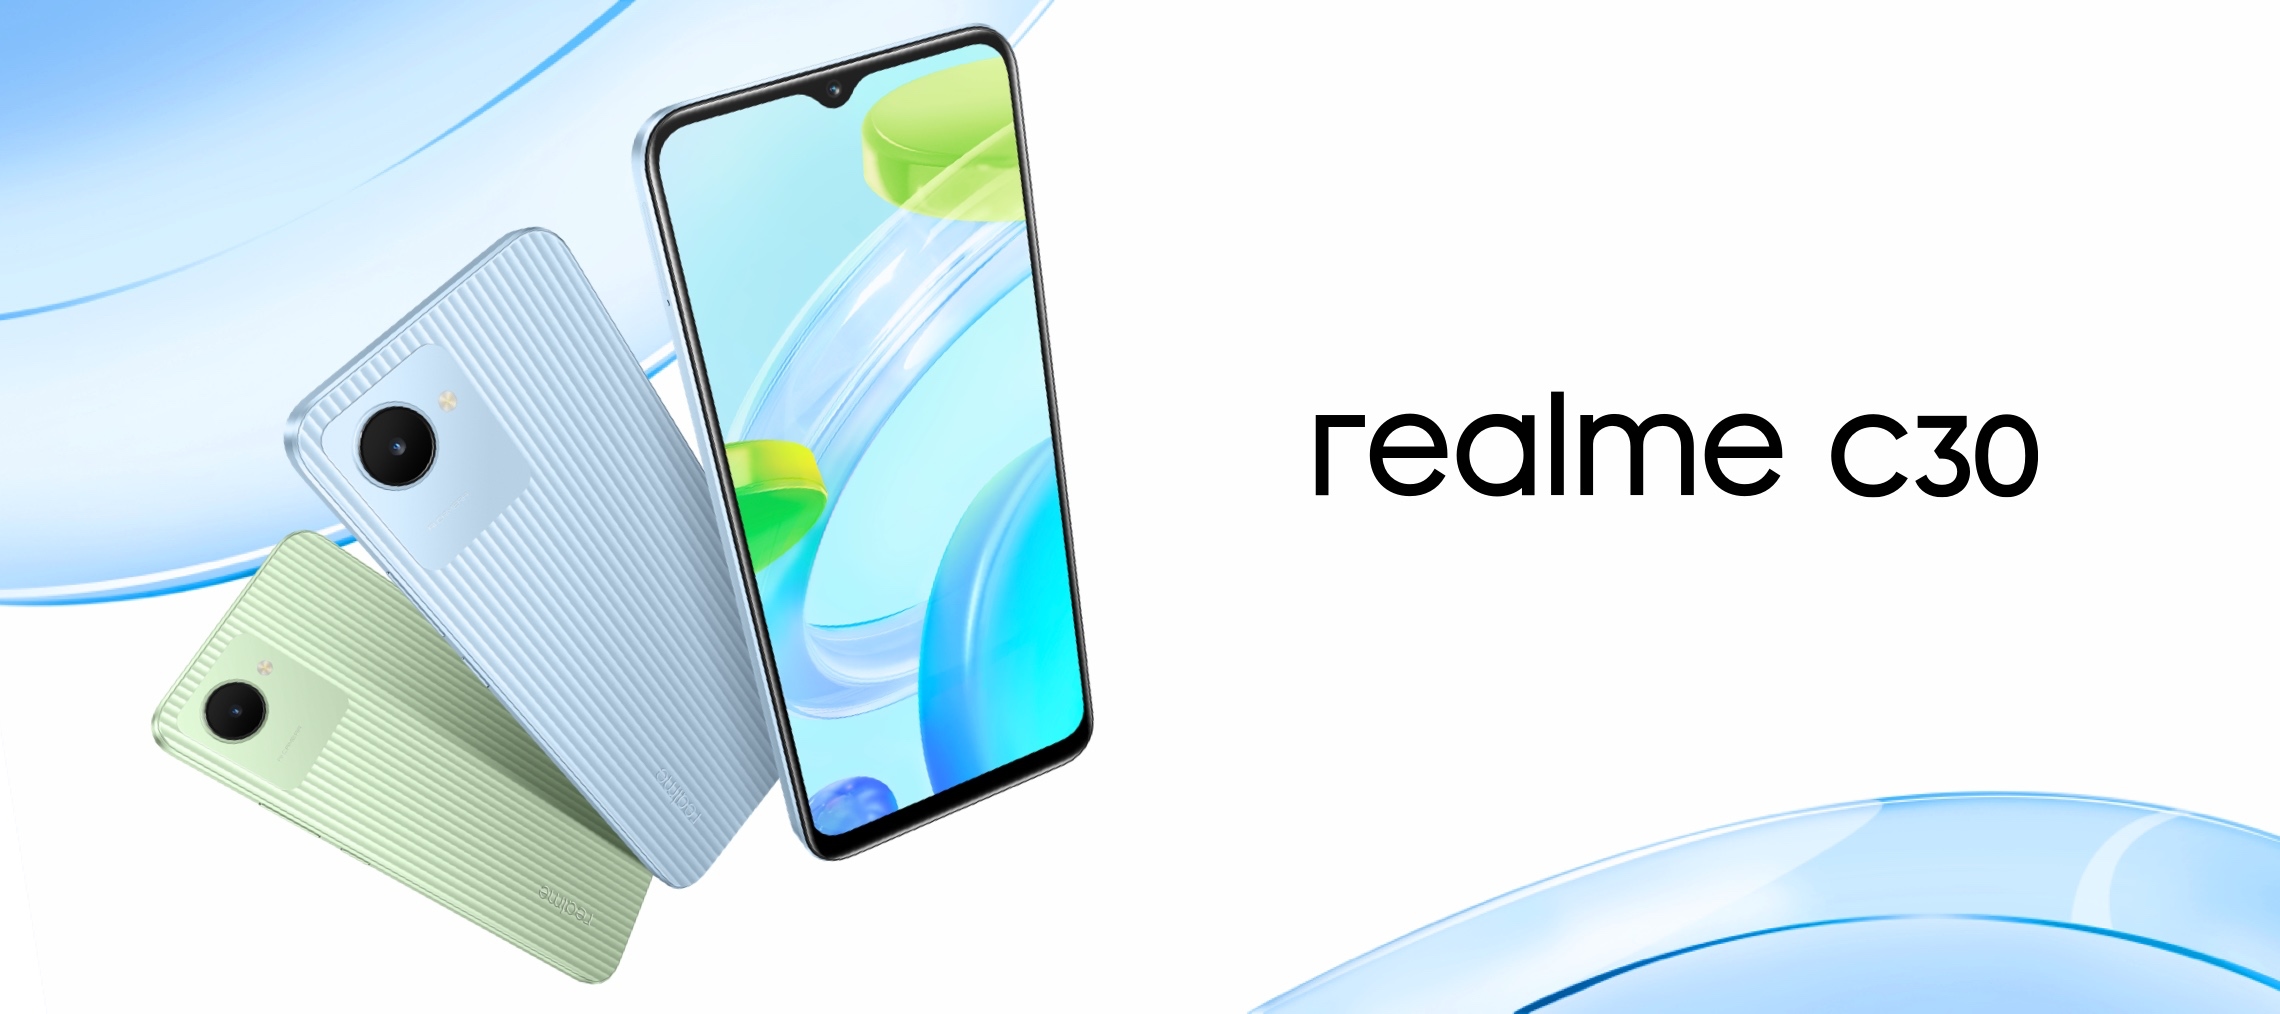 Le smartphone économique Realme C30 dévoilé avec une batterie de 5000 mAh et un prix de 100 $